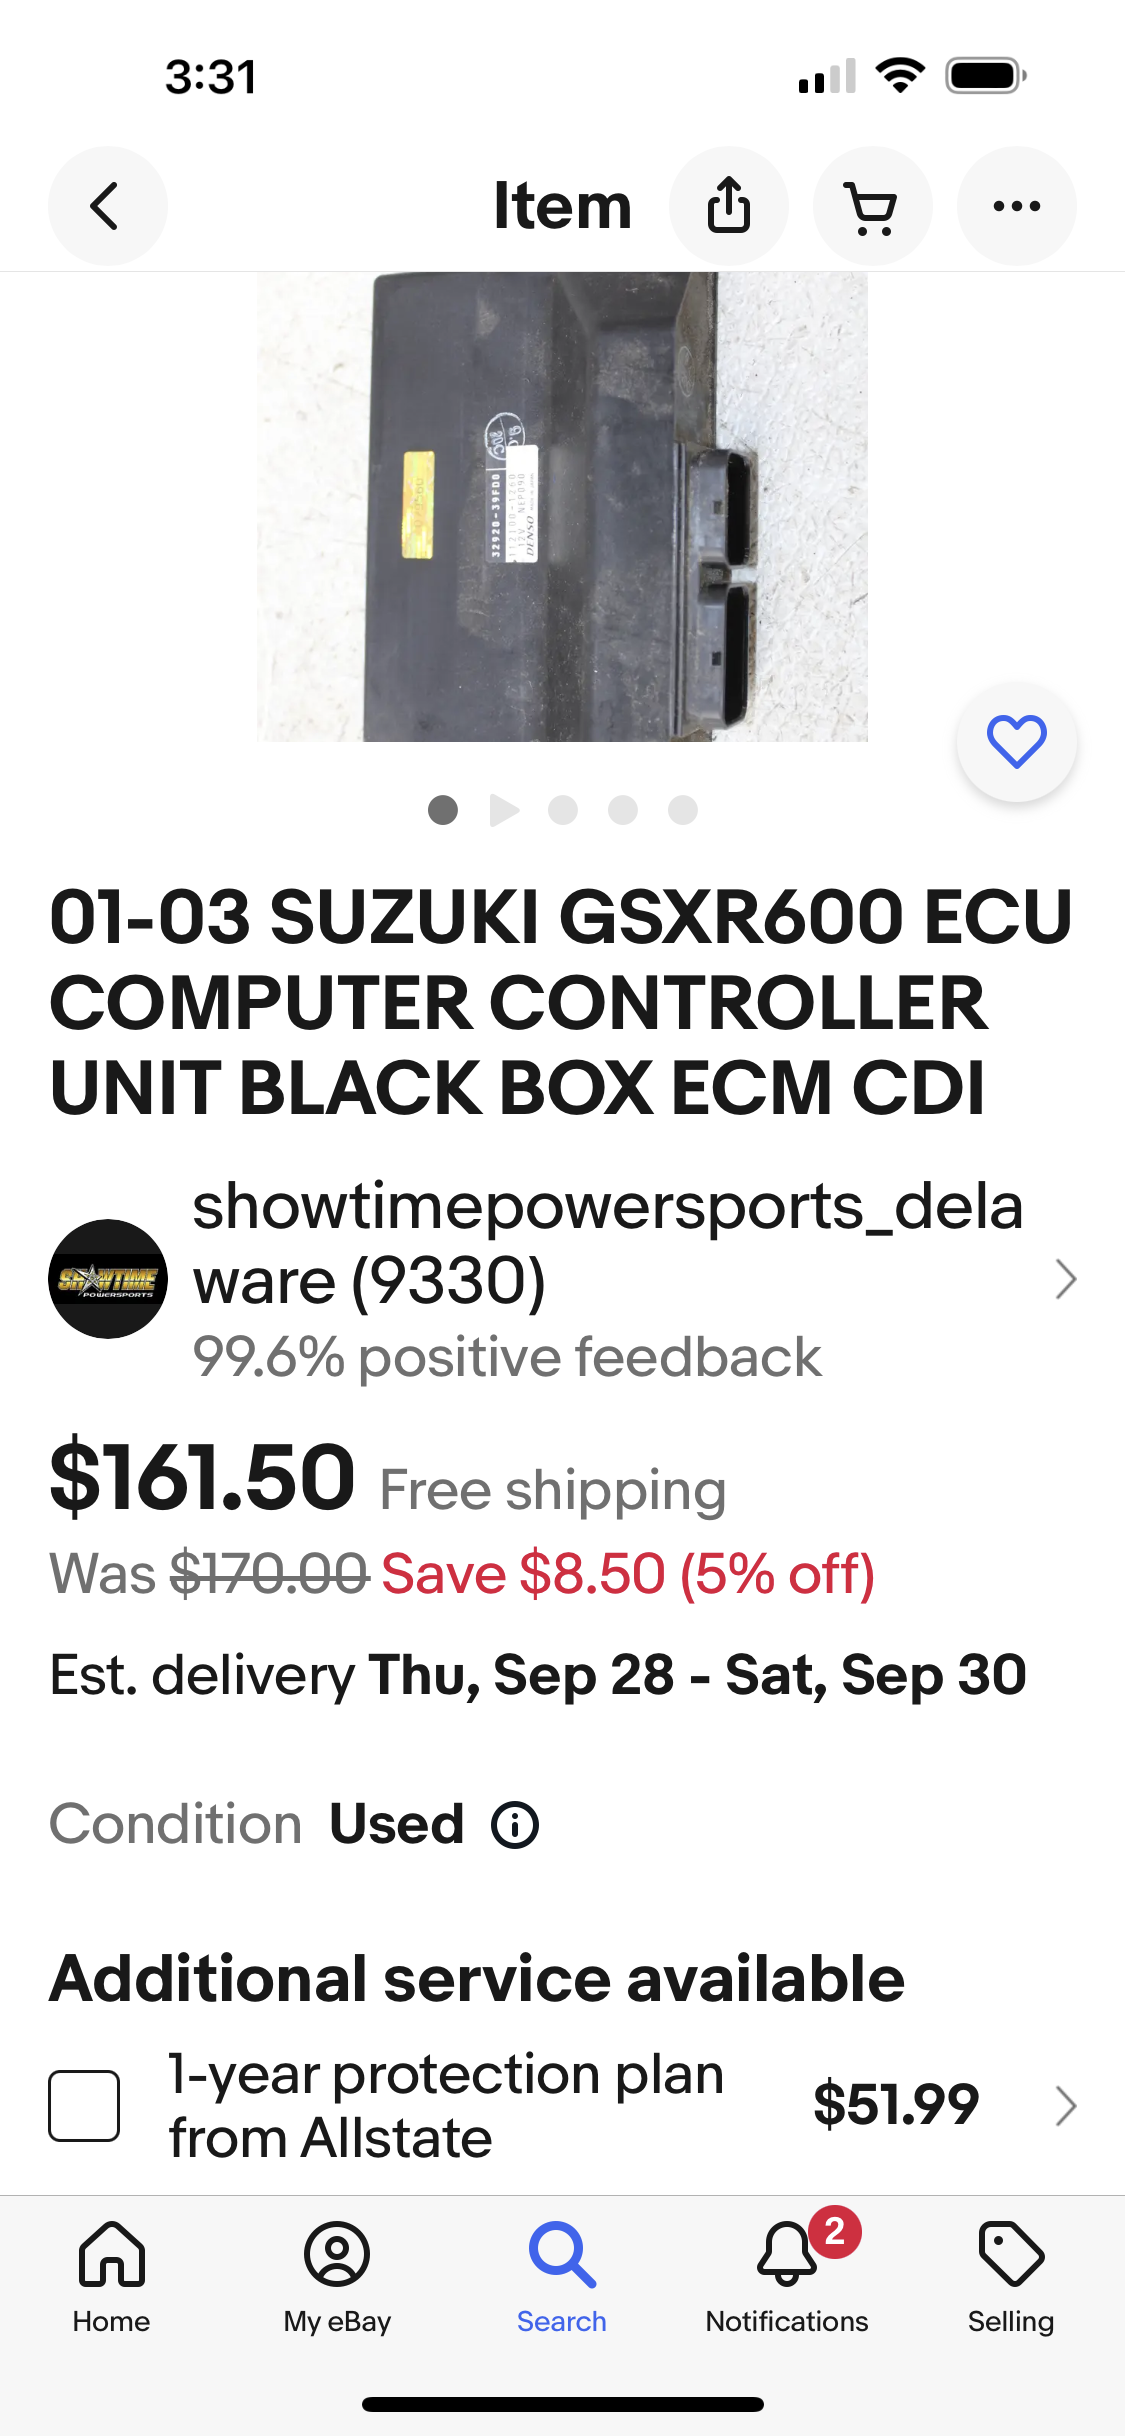 Suzuki GSX are CDI’s Hayabusa CDI’s